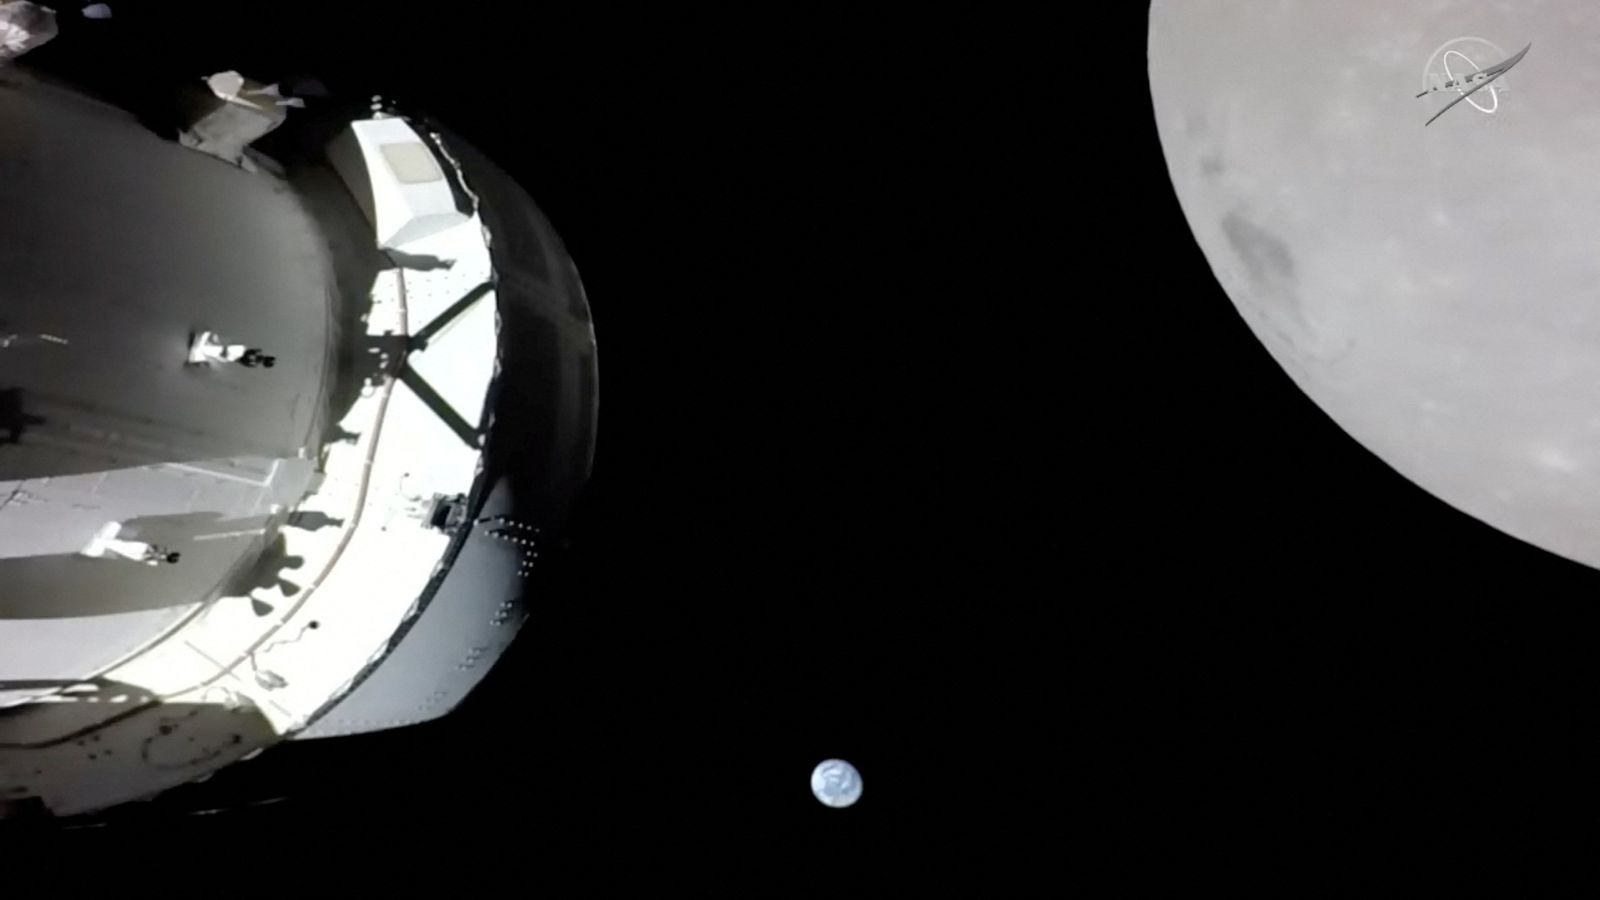 مركبة أوريون الفضائية التابعة لوكالة ناسا تتجه إلى الأرض – بعد رحلتها الأخيرة إلى القمر |  أخبار العلوم والتكنولوجيا